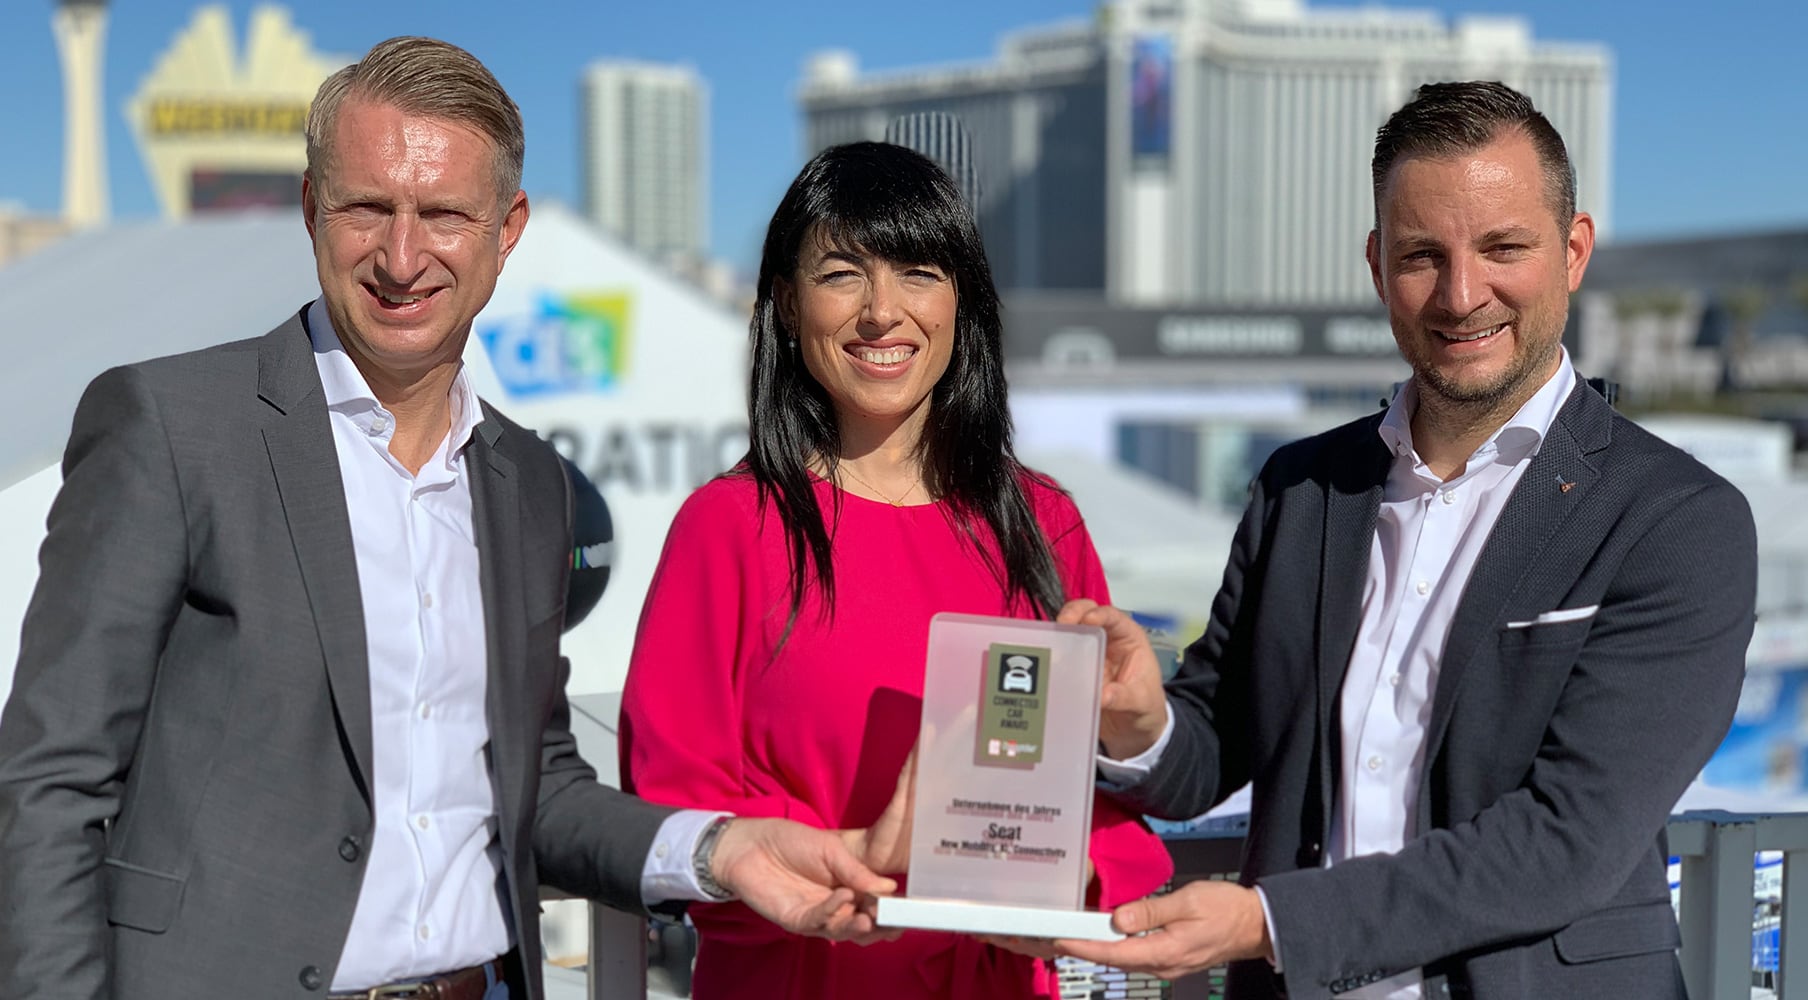 	El premio Connected Car se presentó en la feria CES 2020 en Las Vegas.